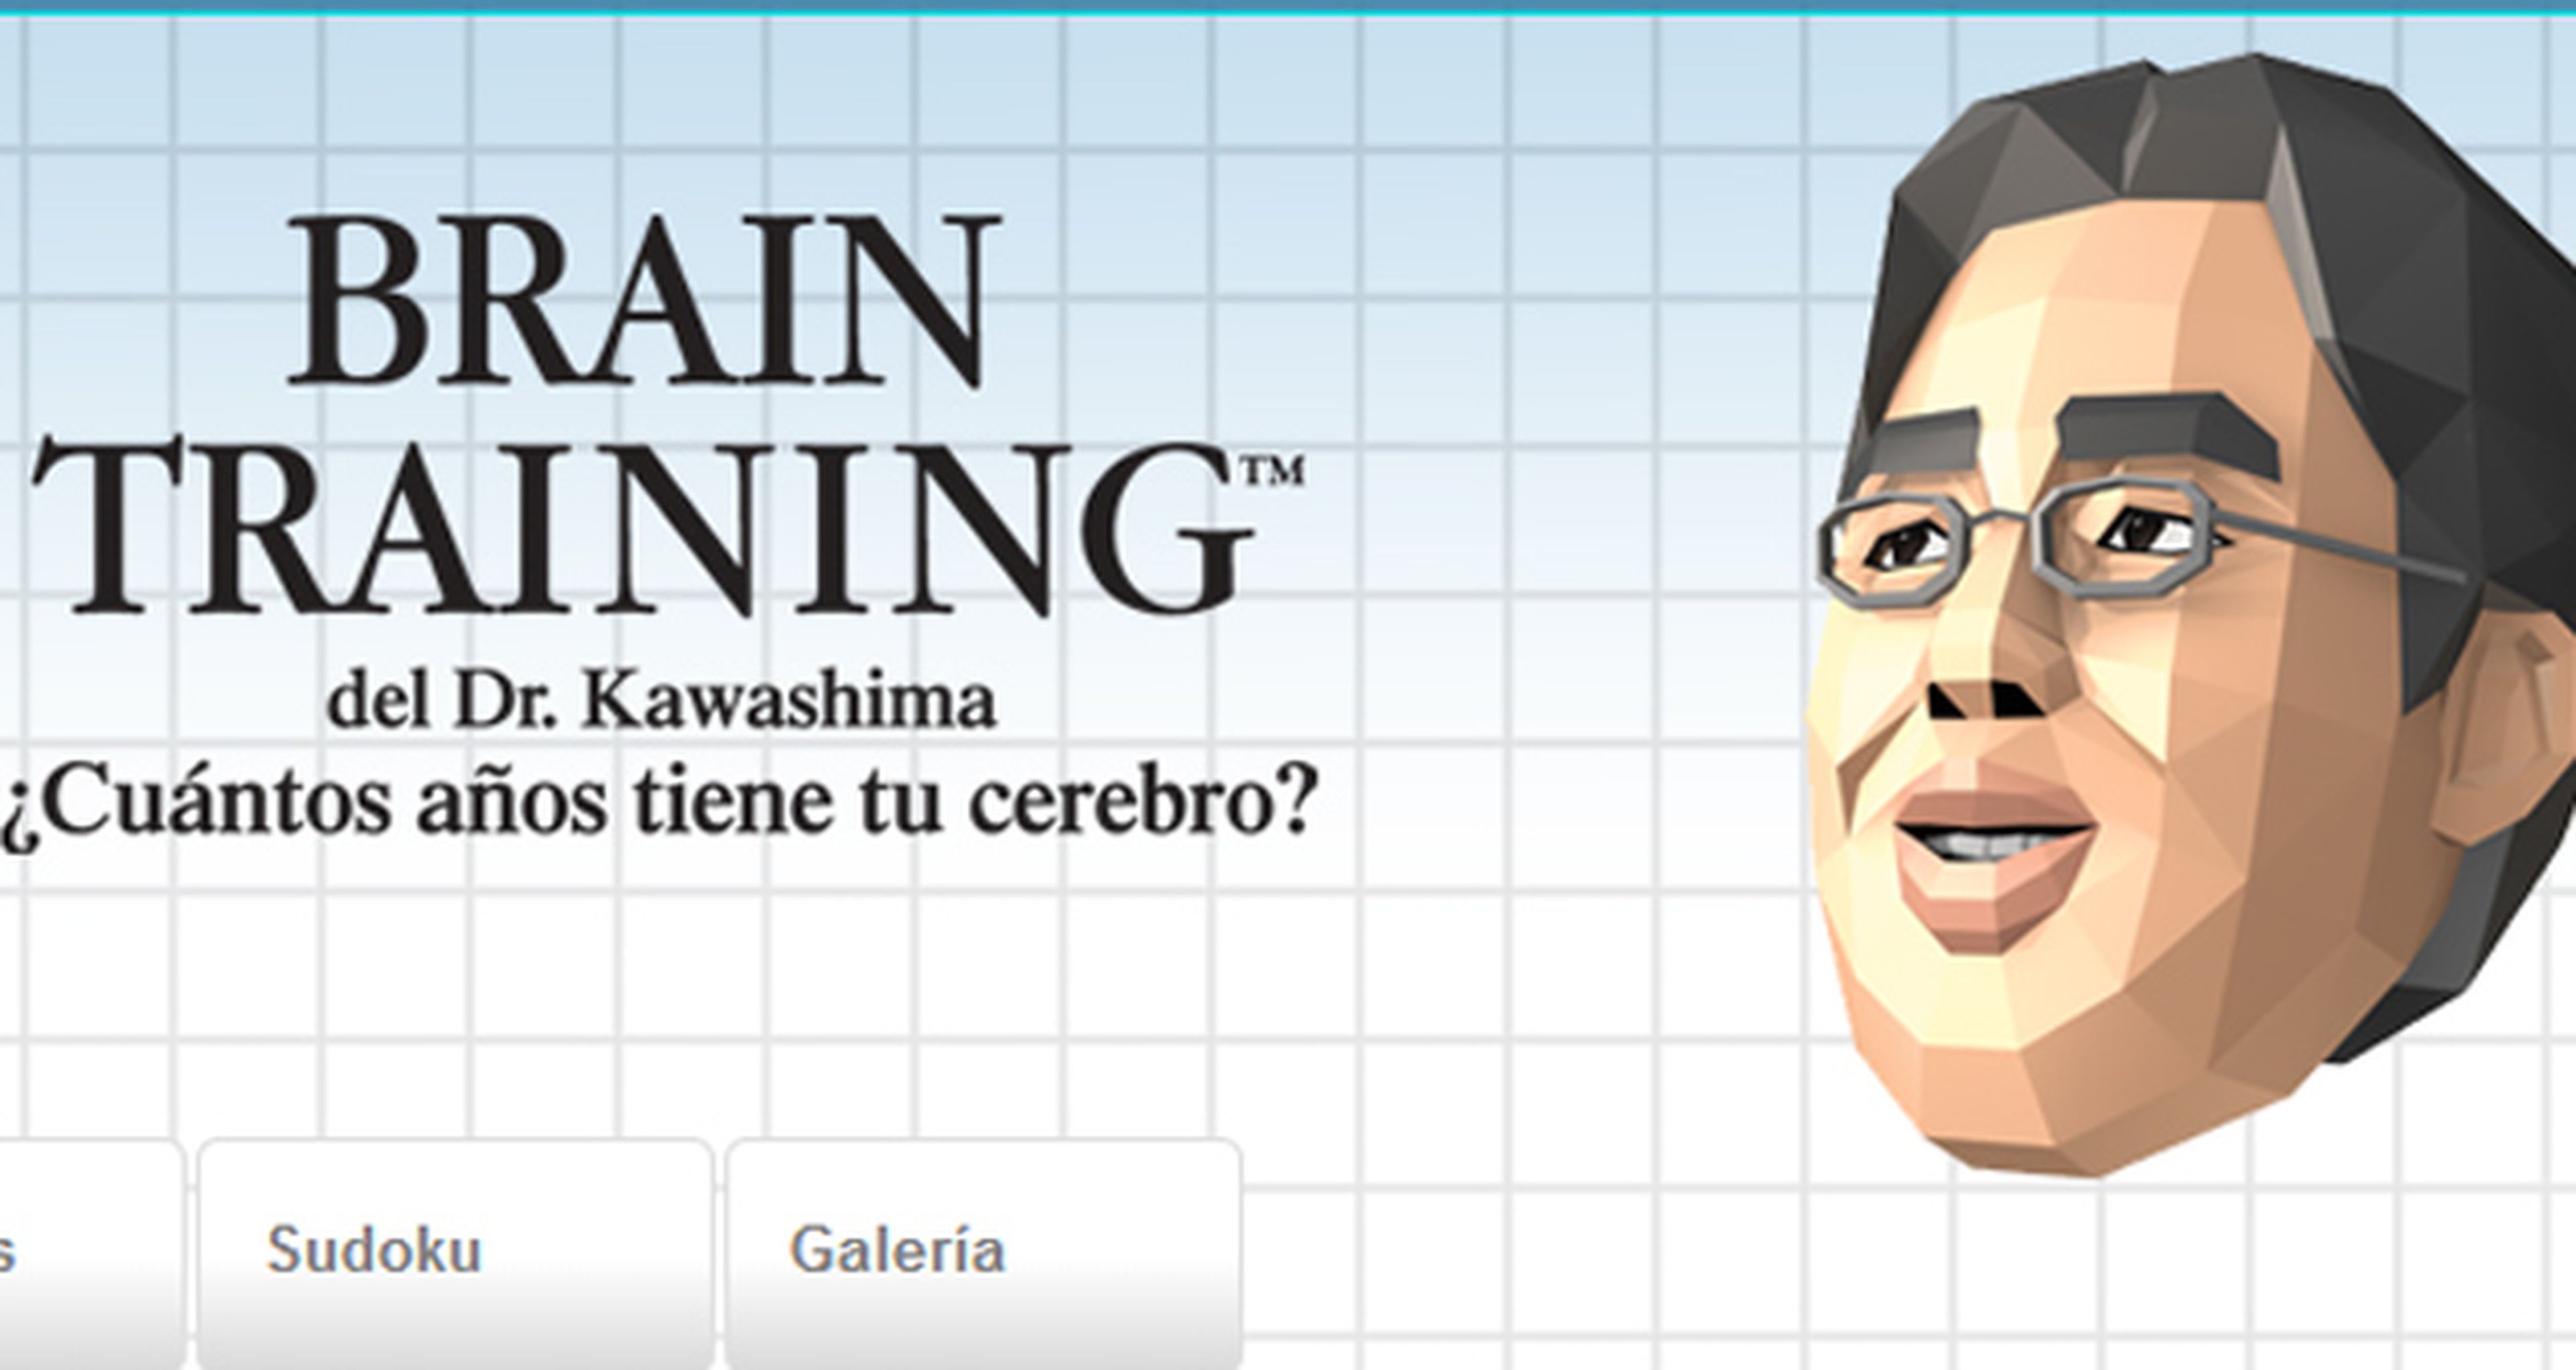 Brain Training del Dr. Kawashima gratis en Wii U por tiempo limitado